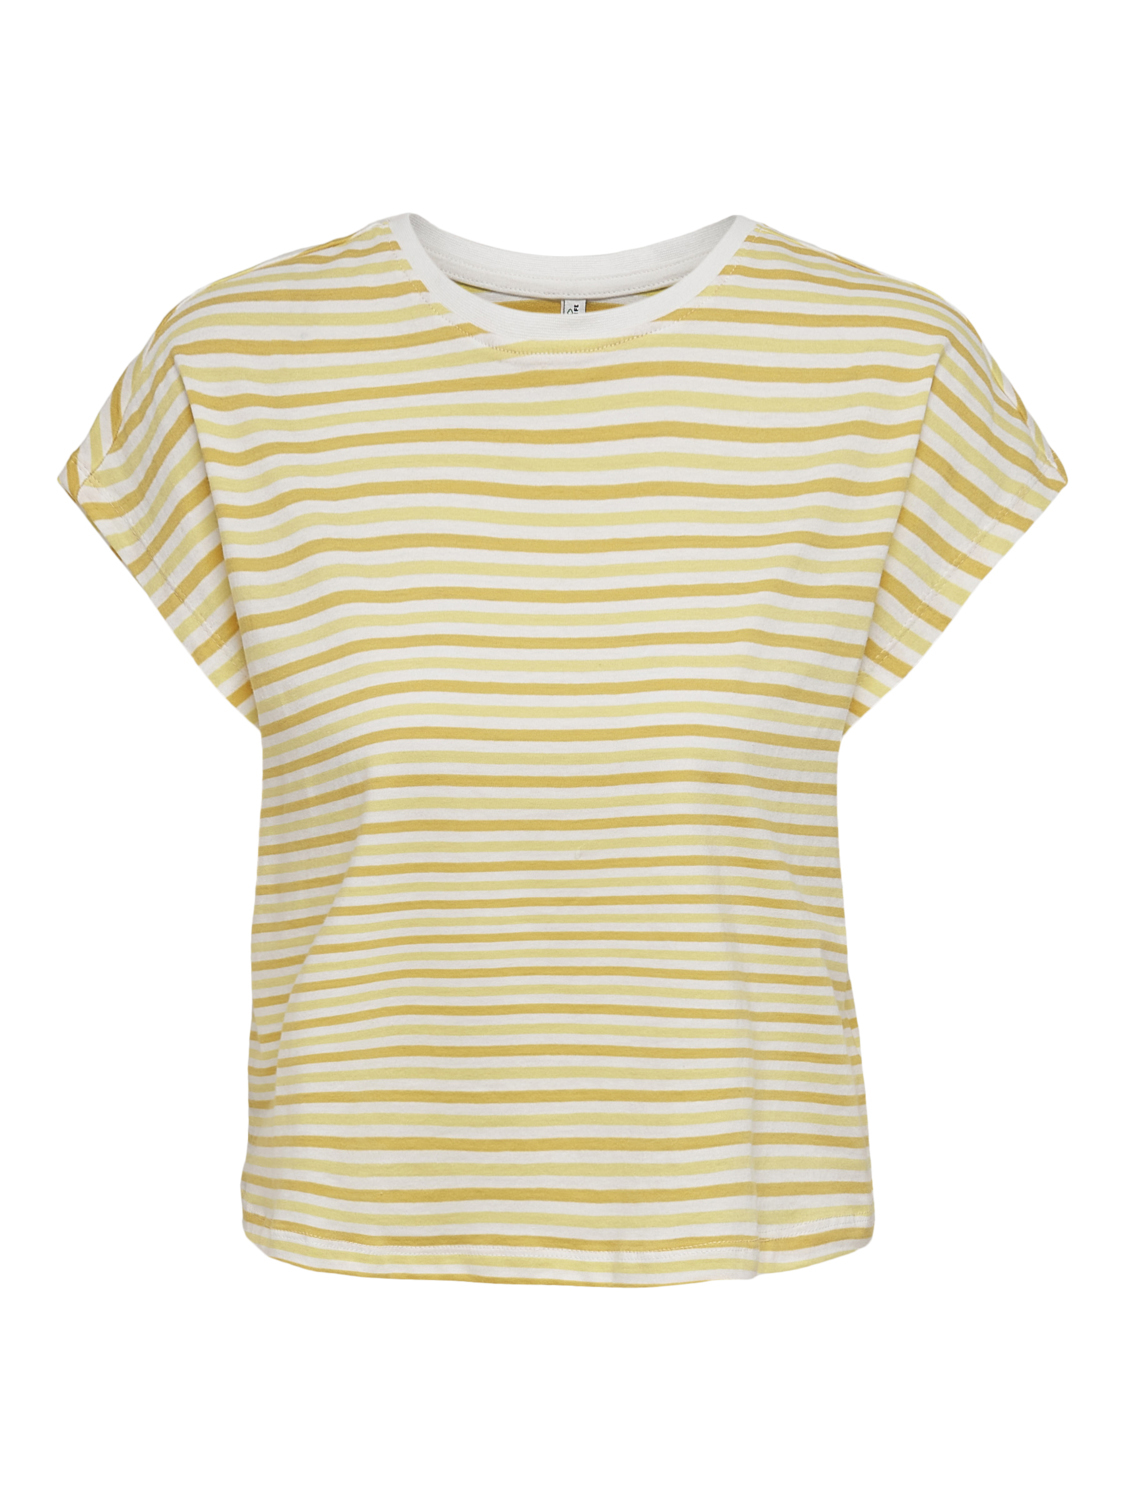 Odzież Kobiety ONLY Koszulka Peppa w kolorze Ciemnożółty, Pastelowo-Żółtym 